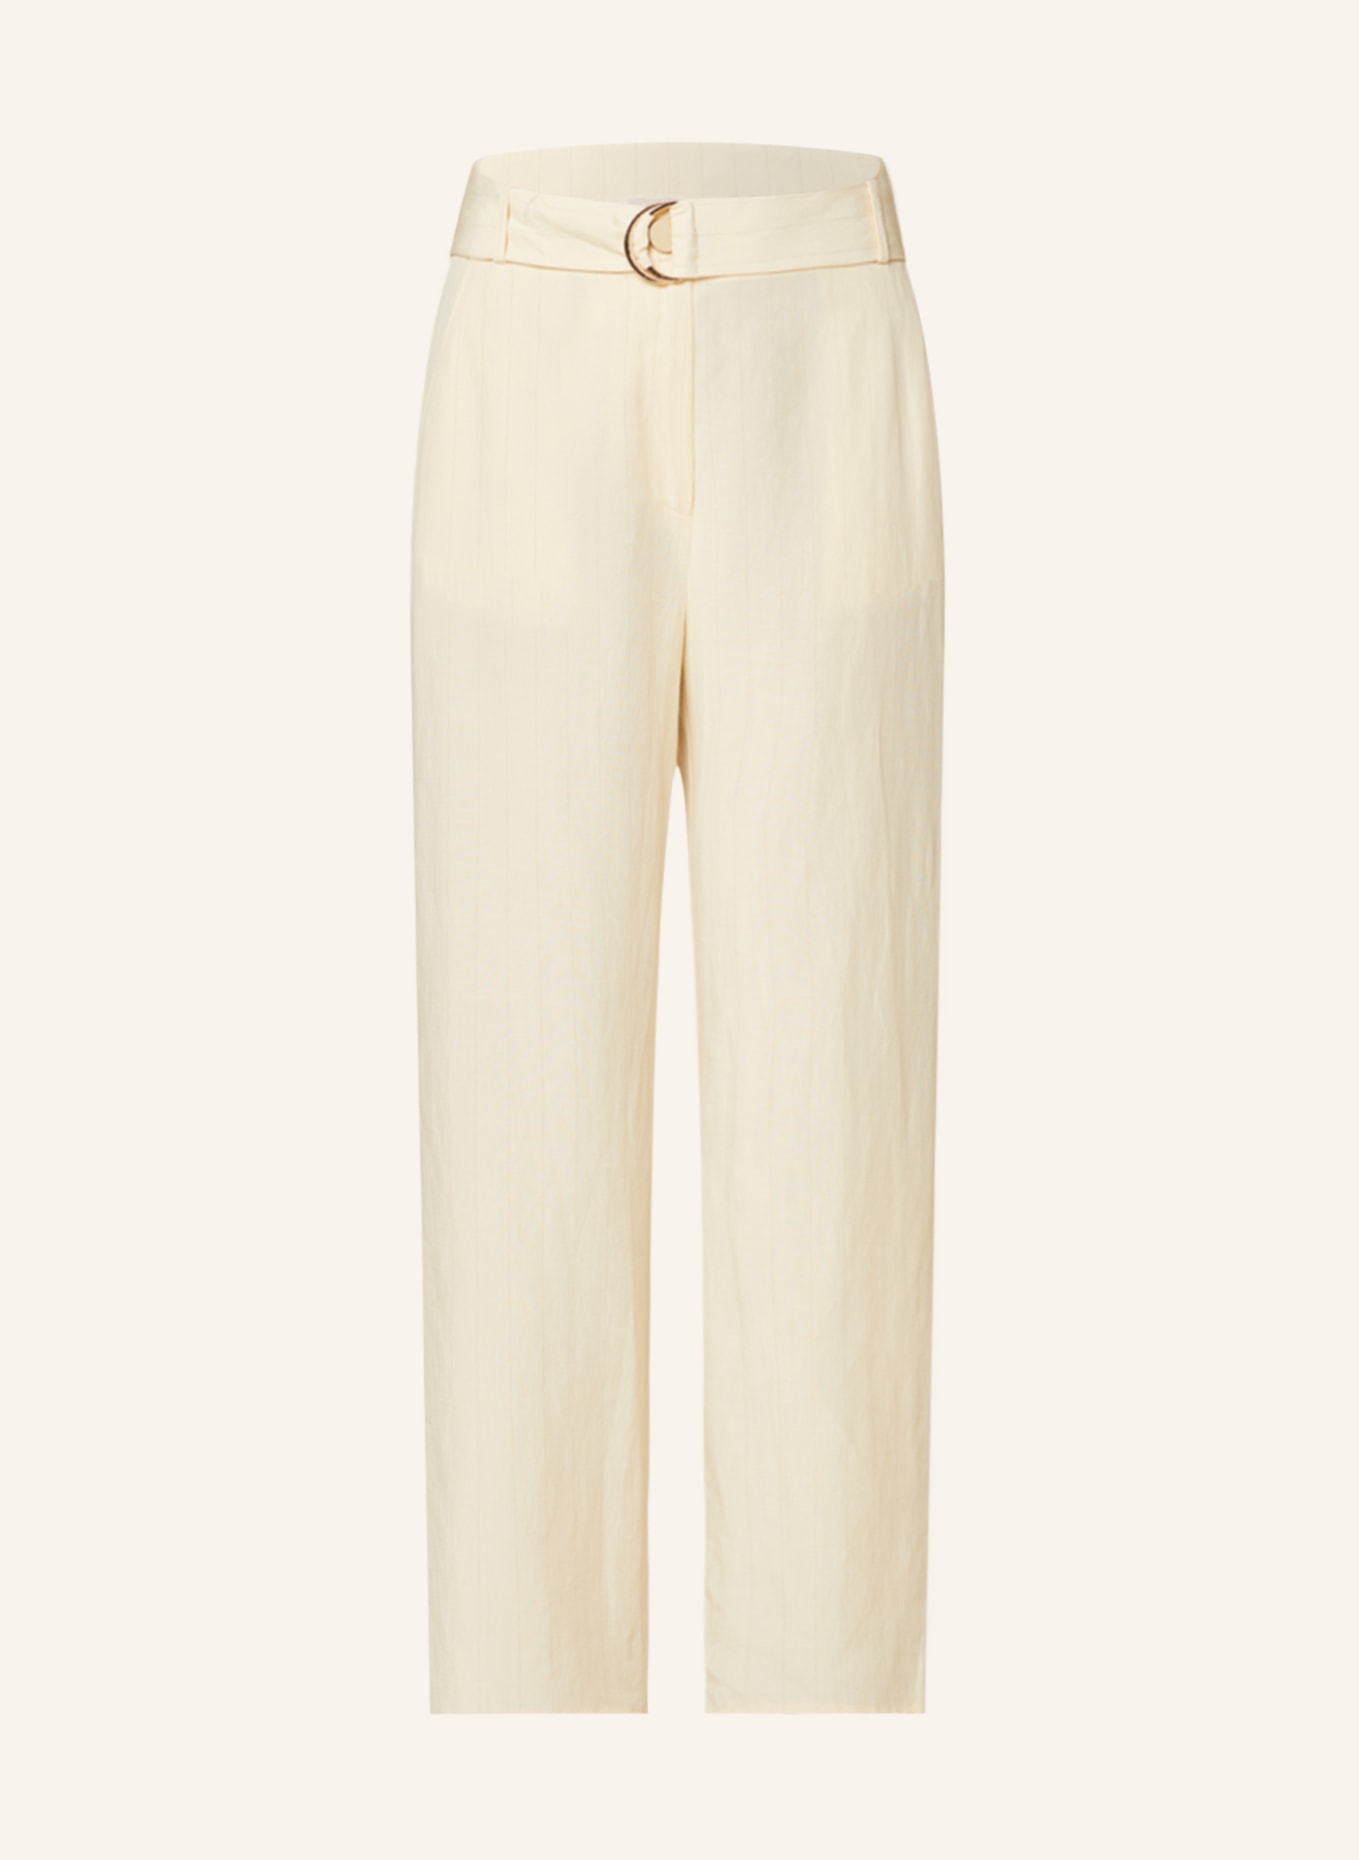 LIU JO Trousers, Color: ECRU (Image 1)